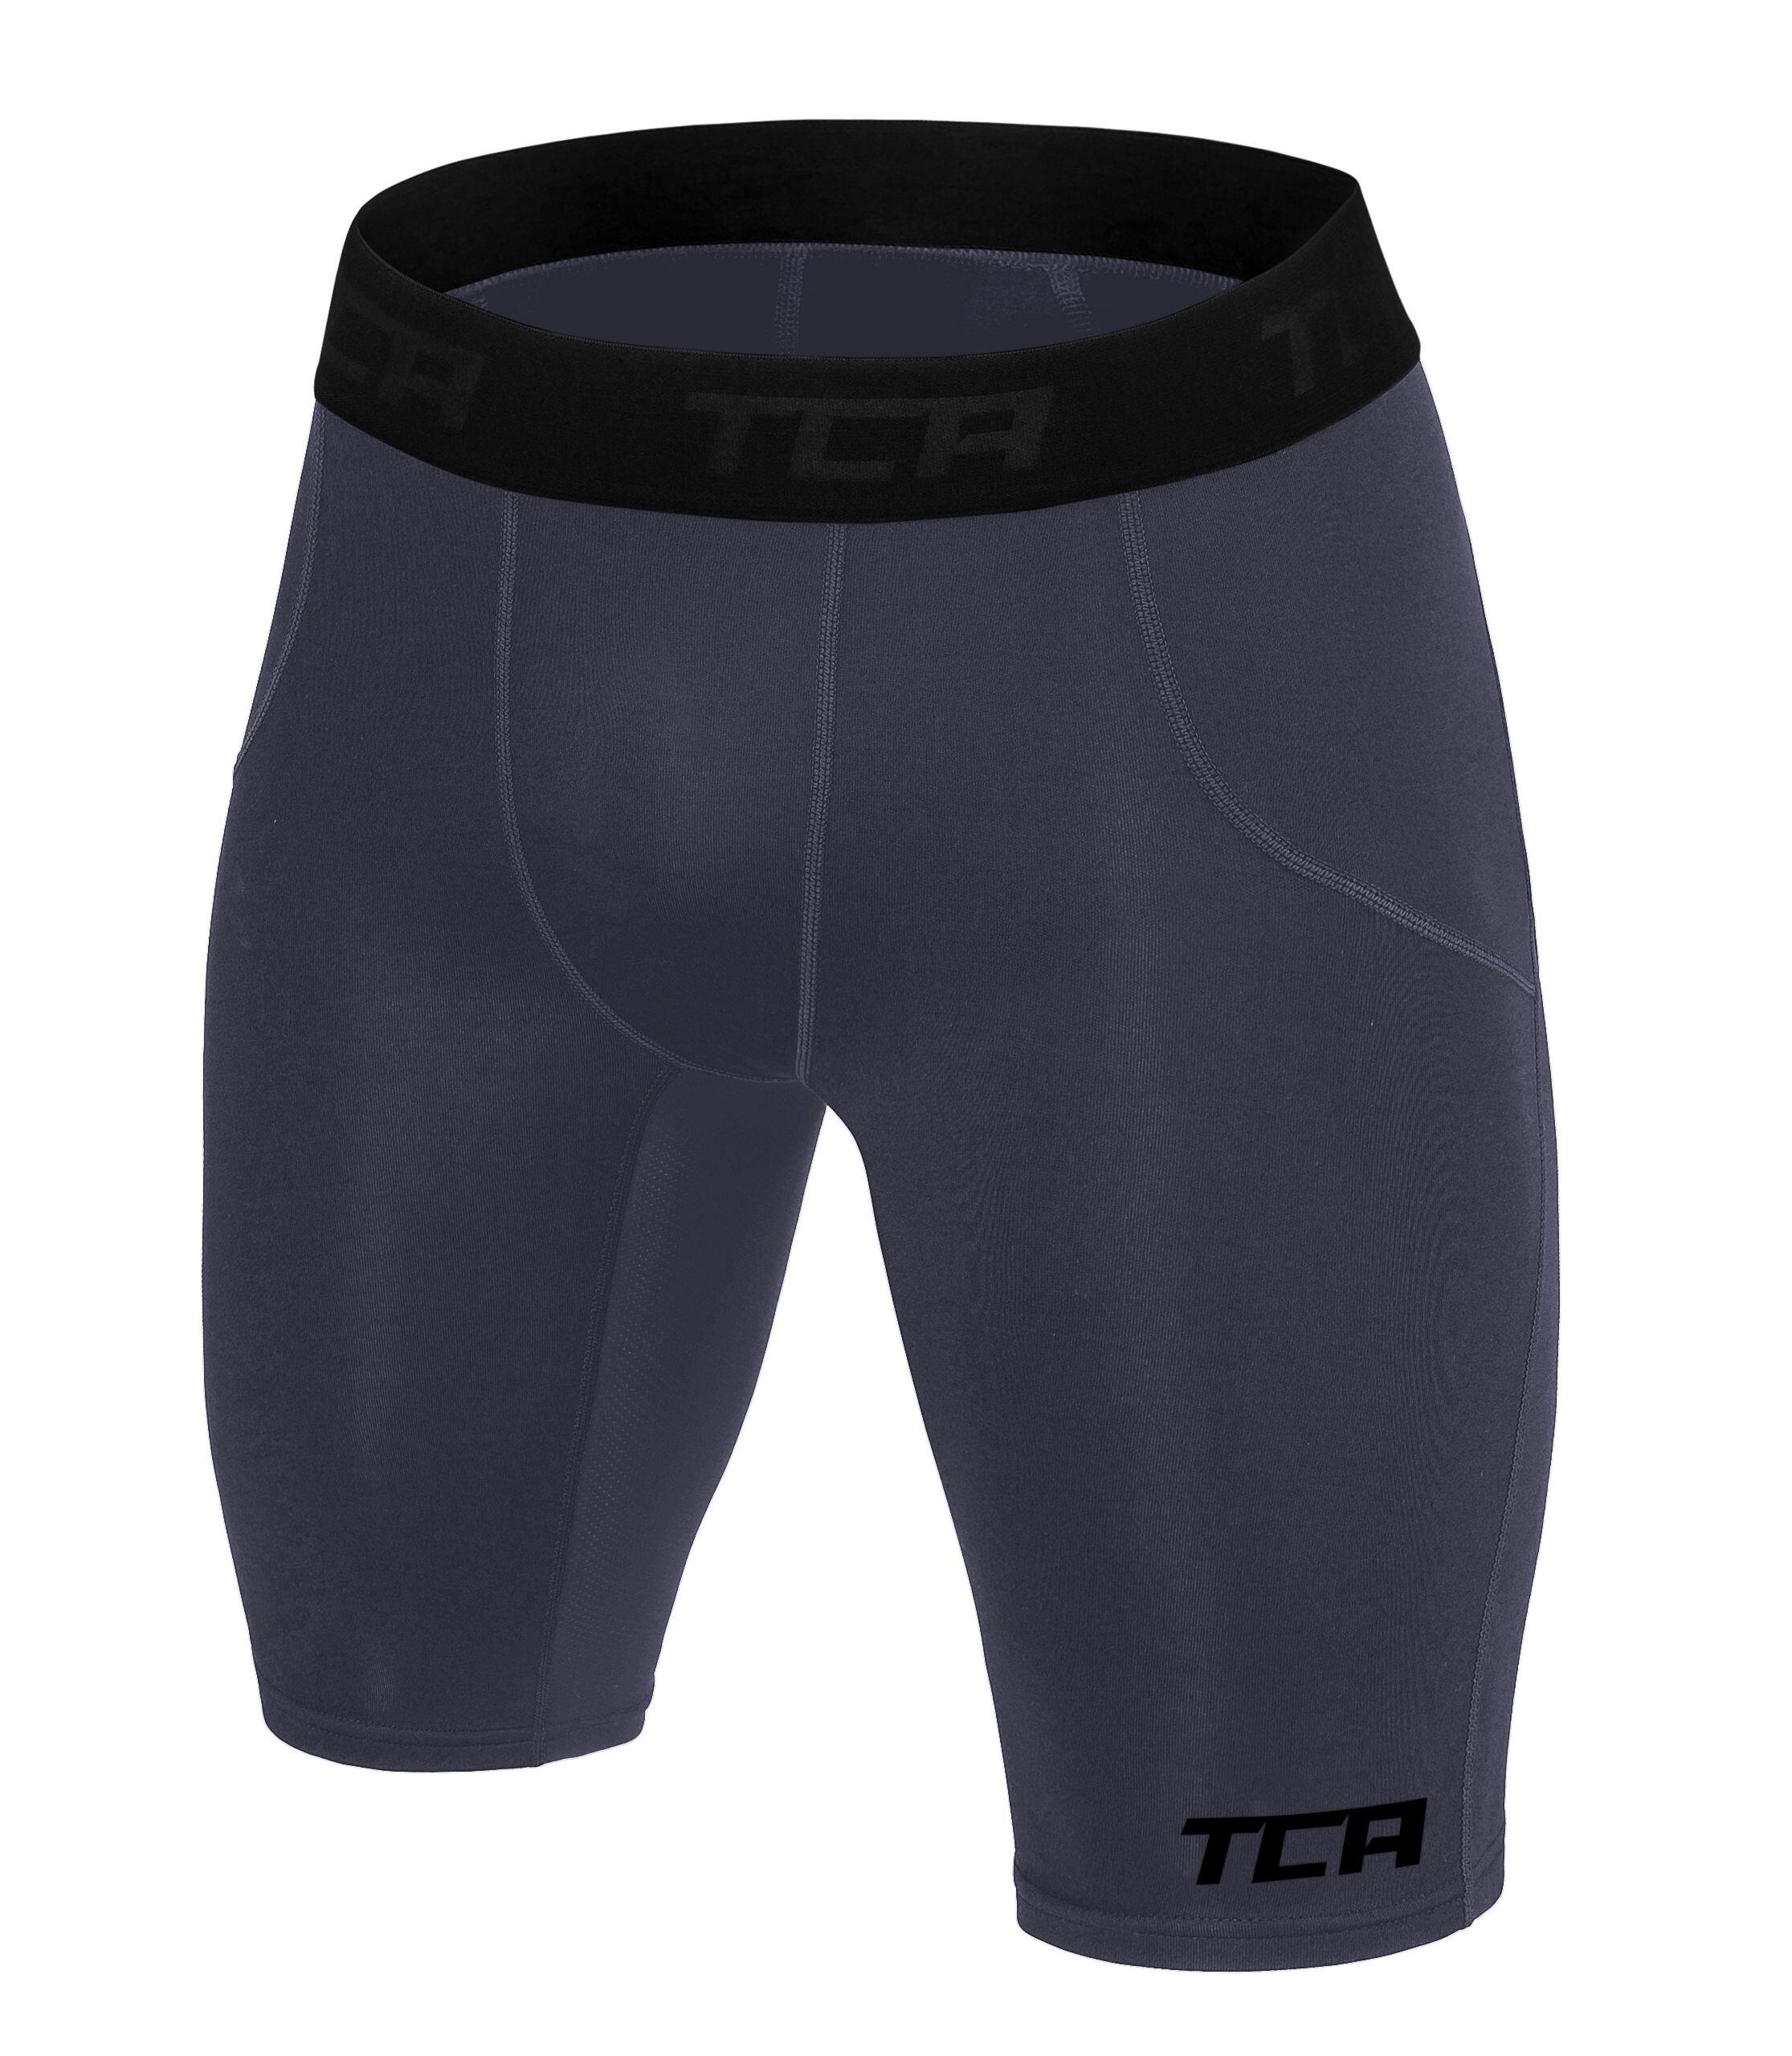 Men's Super Thermal Compression Shorts - Graphite 2/5